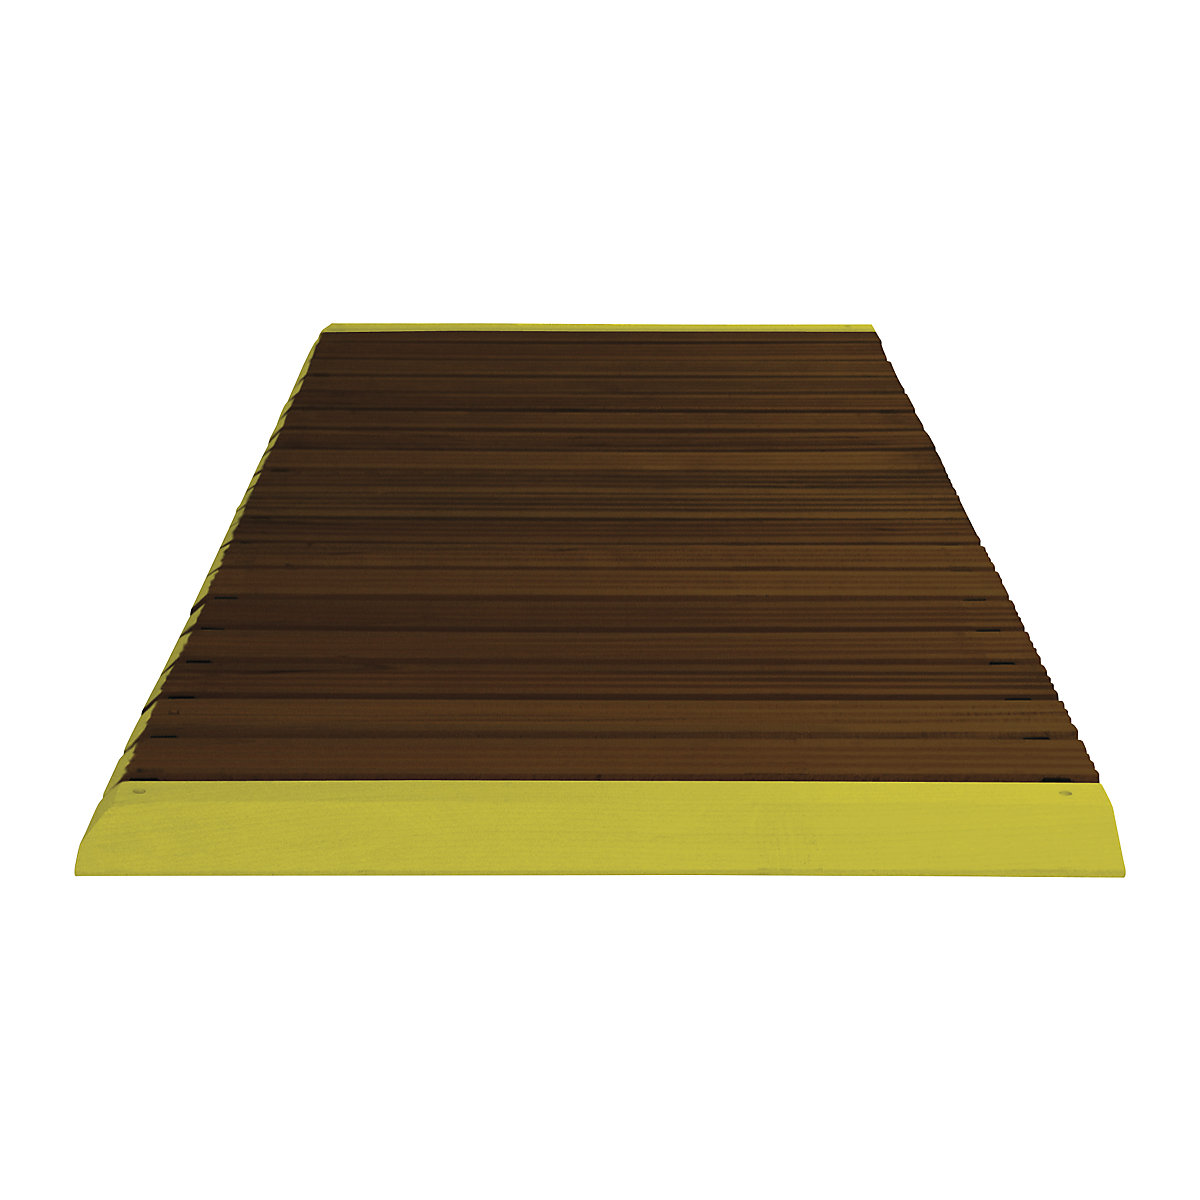 Wooden safety grid, dark stain, per metre